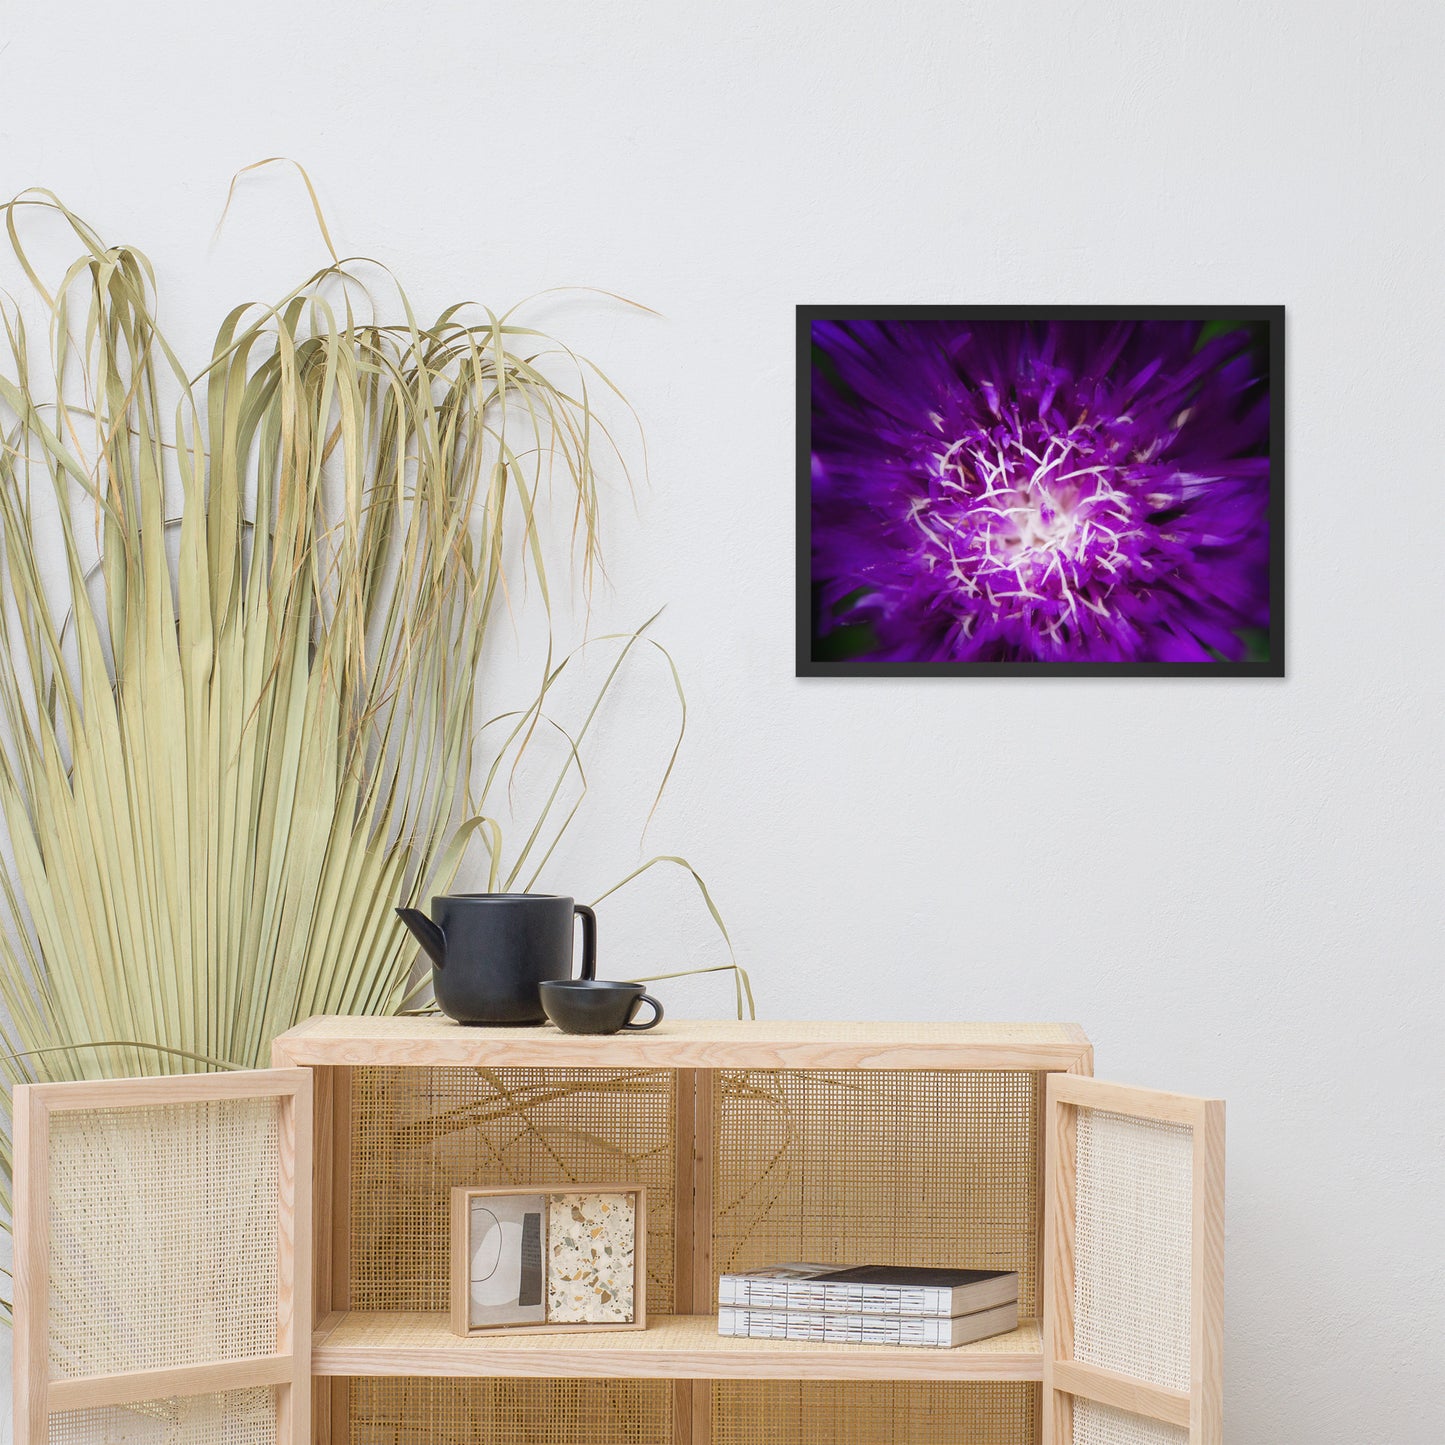 Modern Living Room Art Decor: Purple Abstract Flower - Botanical / Floral / Flora / Flowers / Nature Photograph Framed Wall Art Print - Artwork - Wall Decor